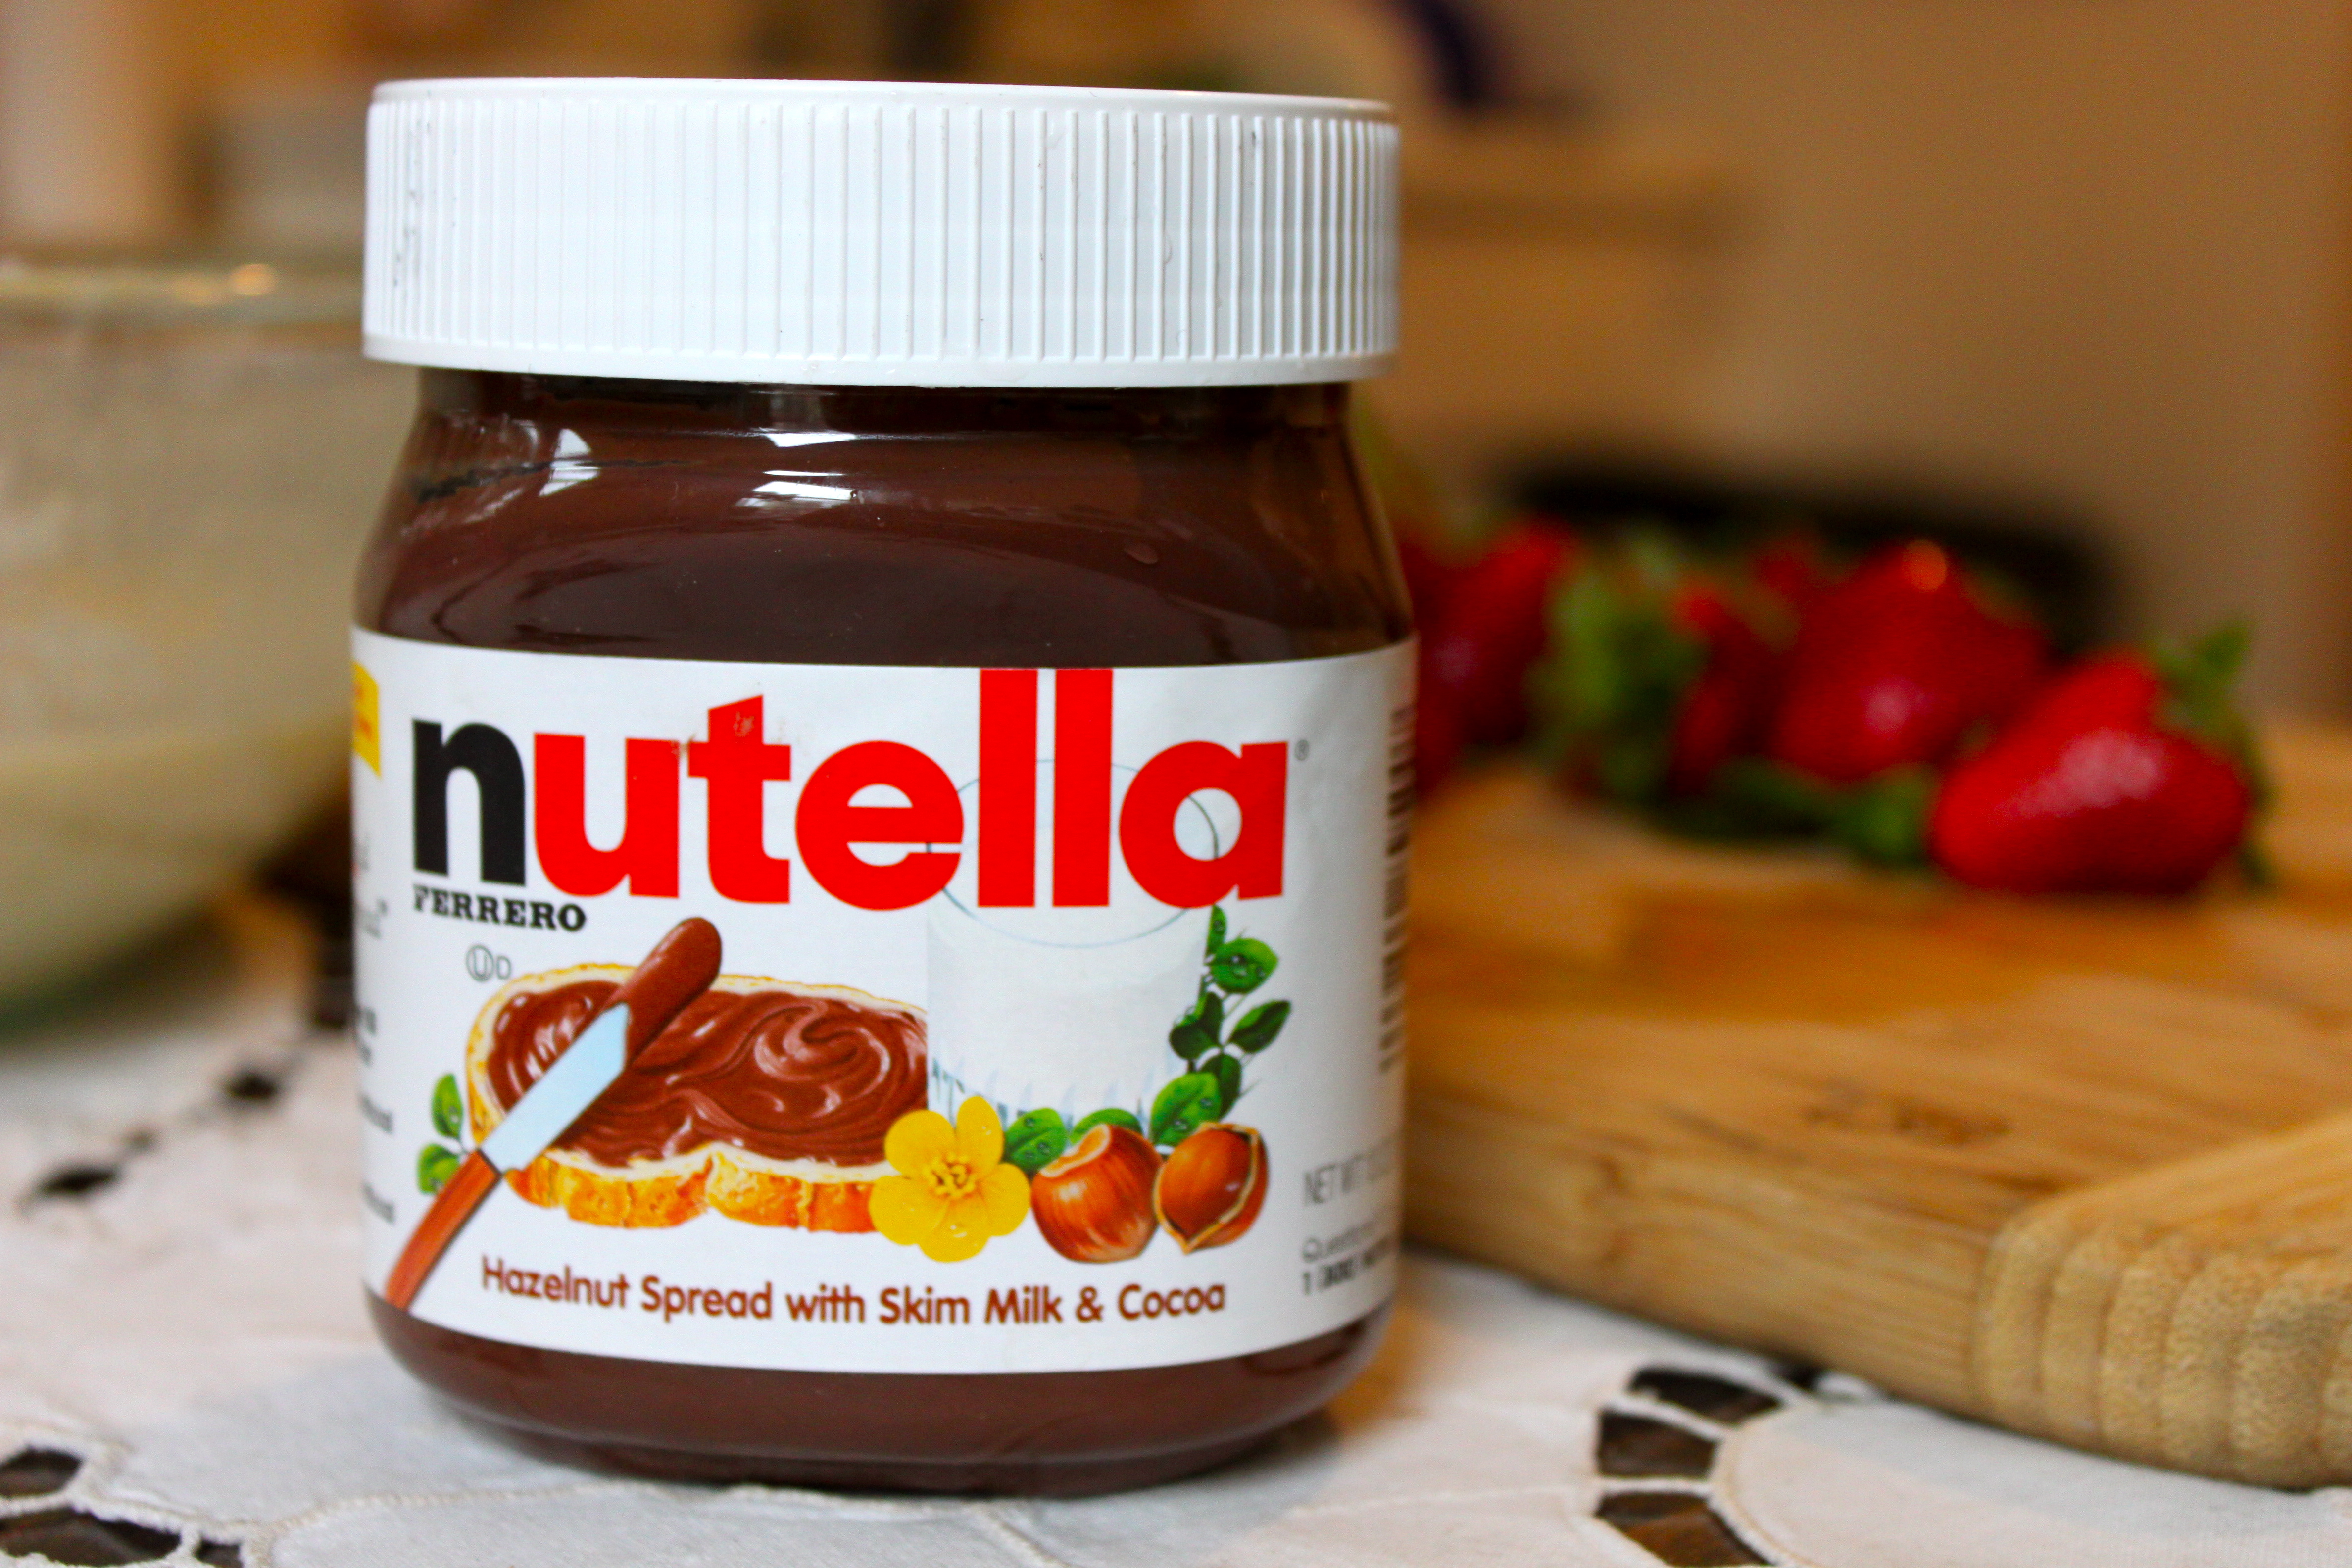 Nutella có chứa các thành phần làm từ thực phẩm biến đổi gen